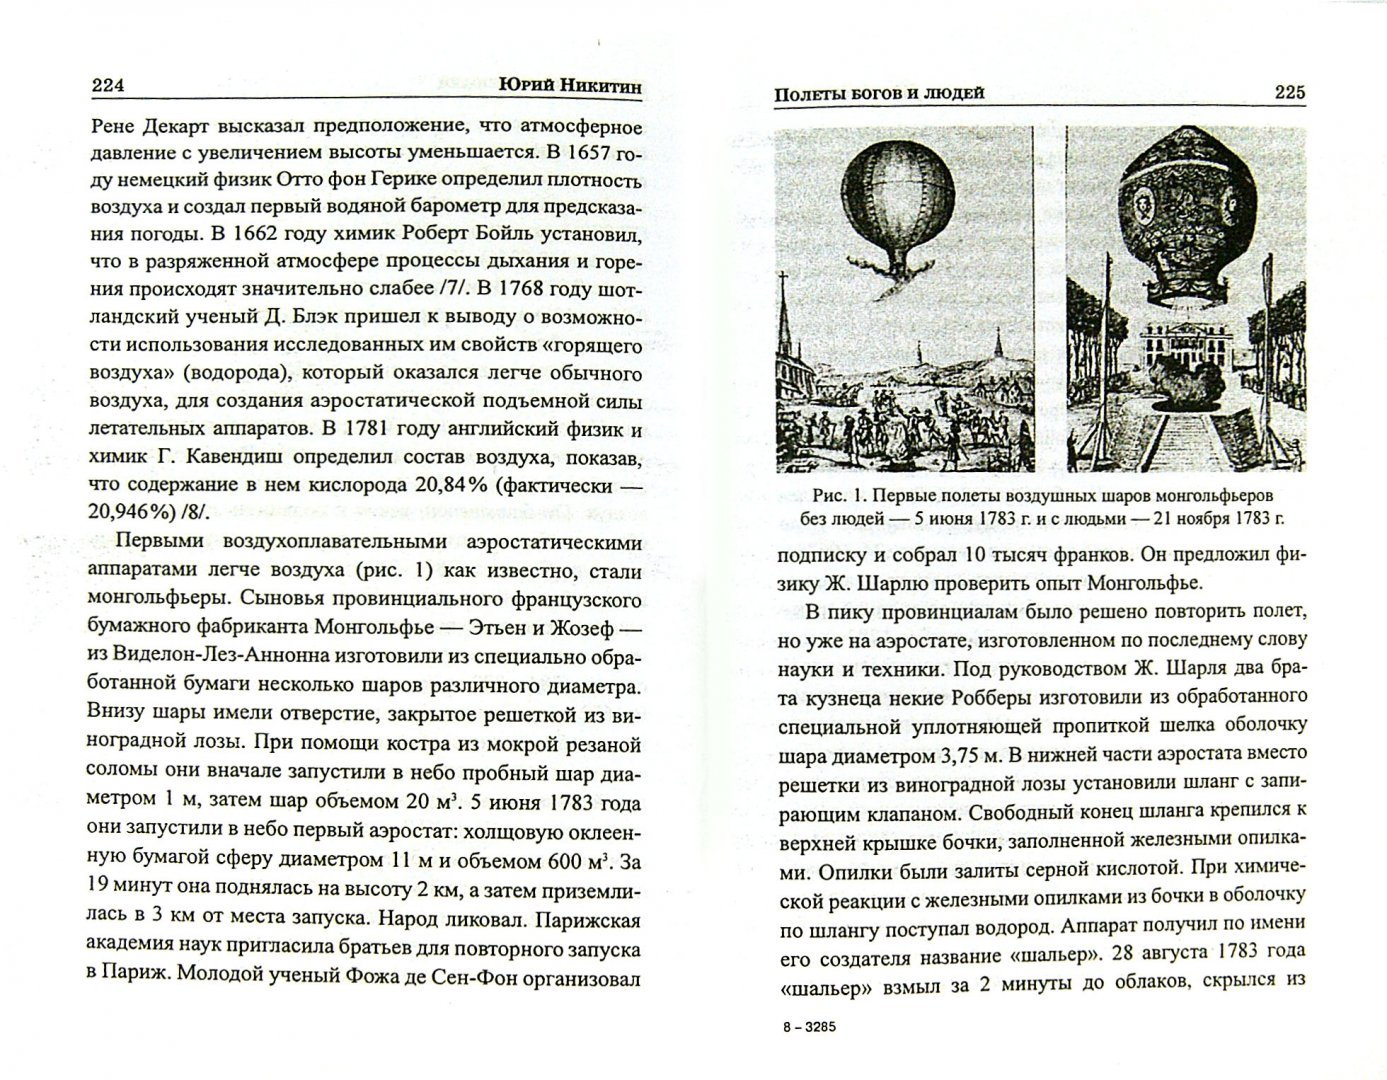 Иллюстрация 1 из 5 для Полеты богов и людей - Юрий Никитин | Лабиринт - книги. Источник: Лабиринт